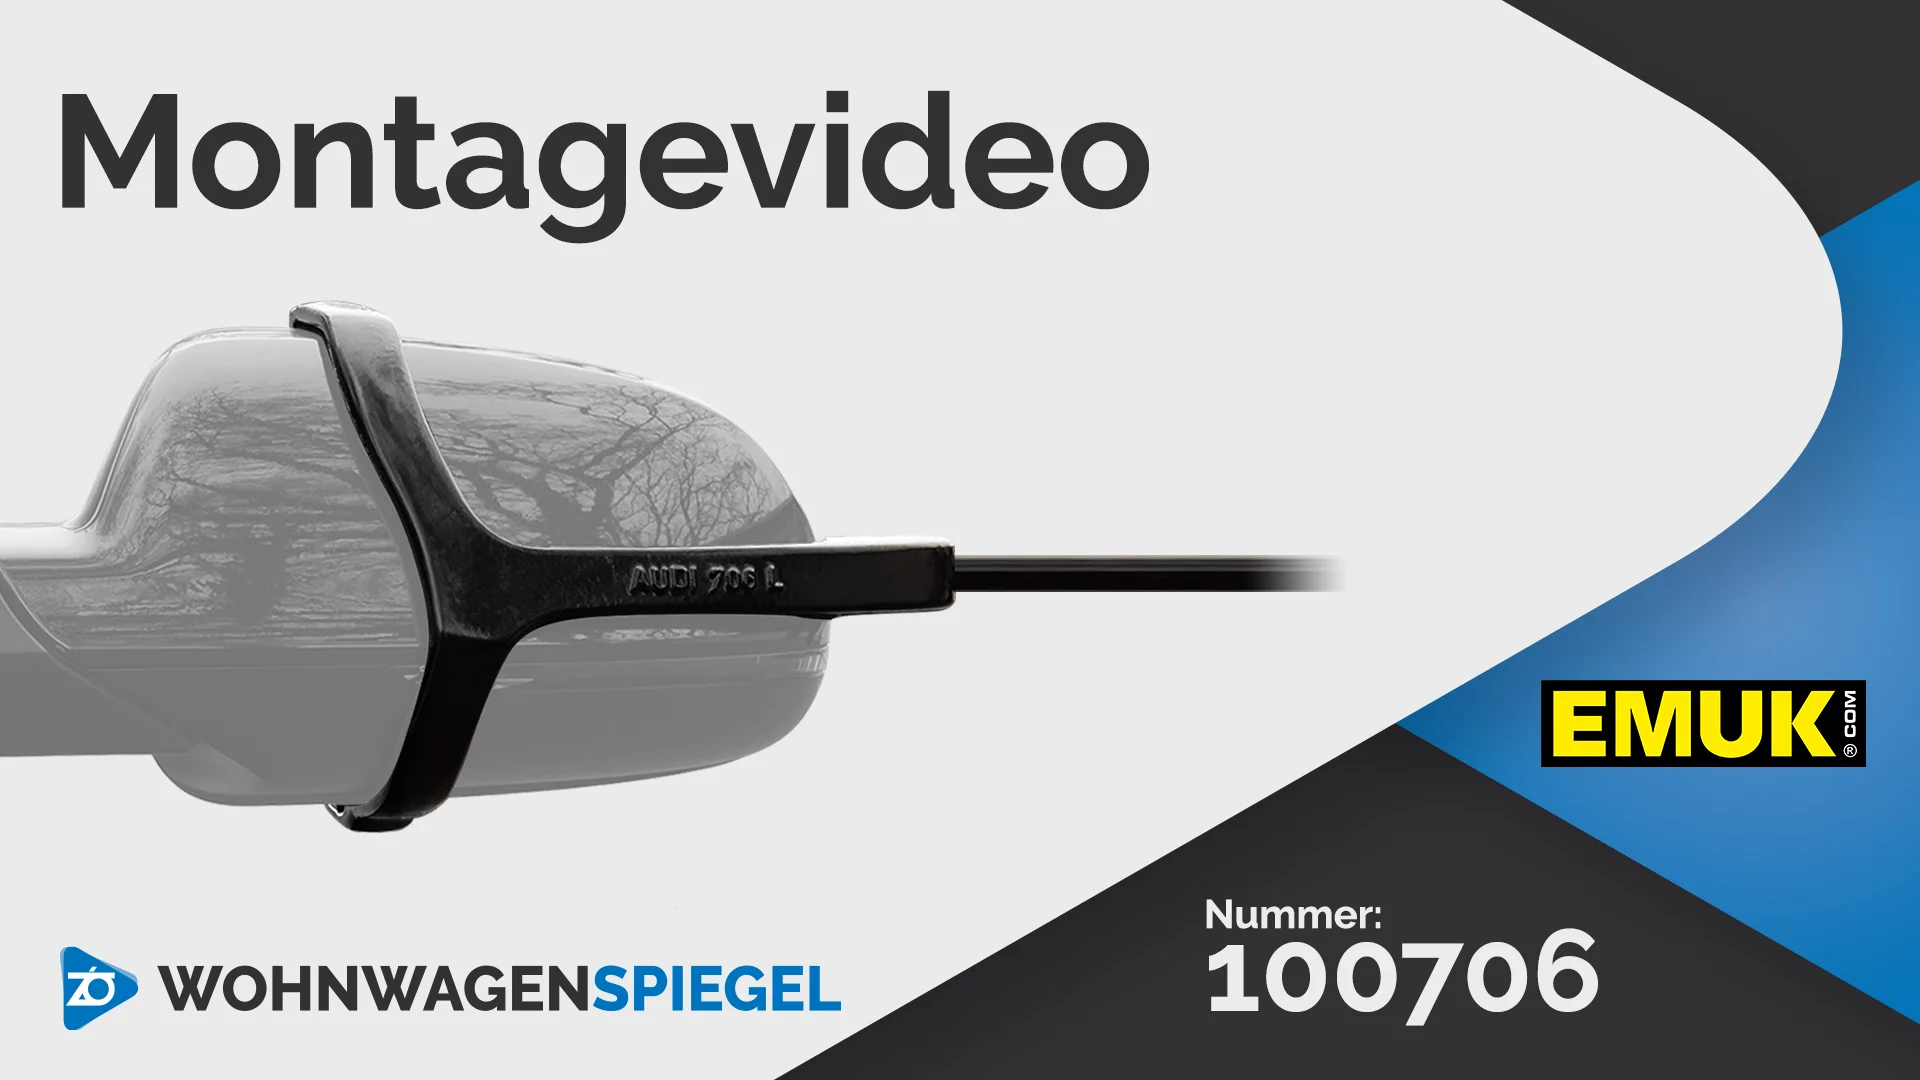 EMUK 100706 Wohnwagenspiegel Montage (Deutsch) on Vimeo